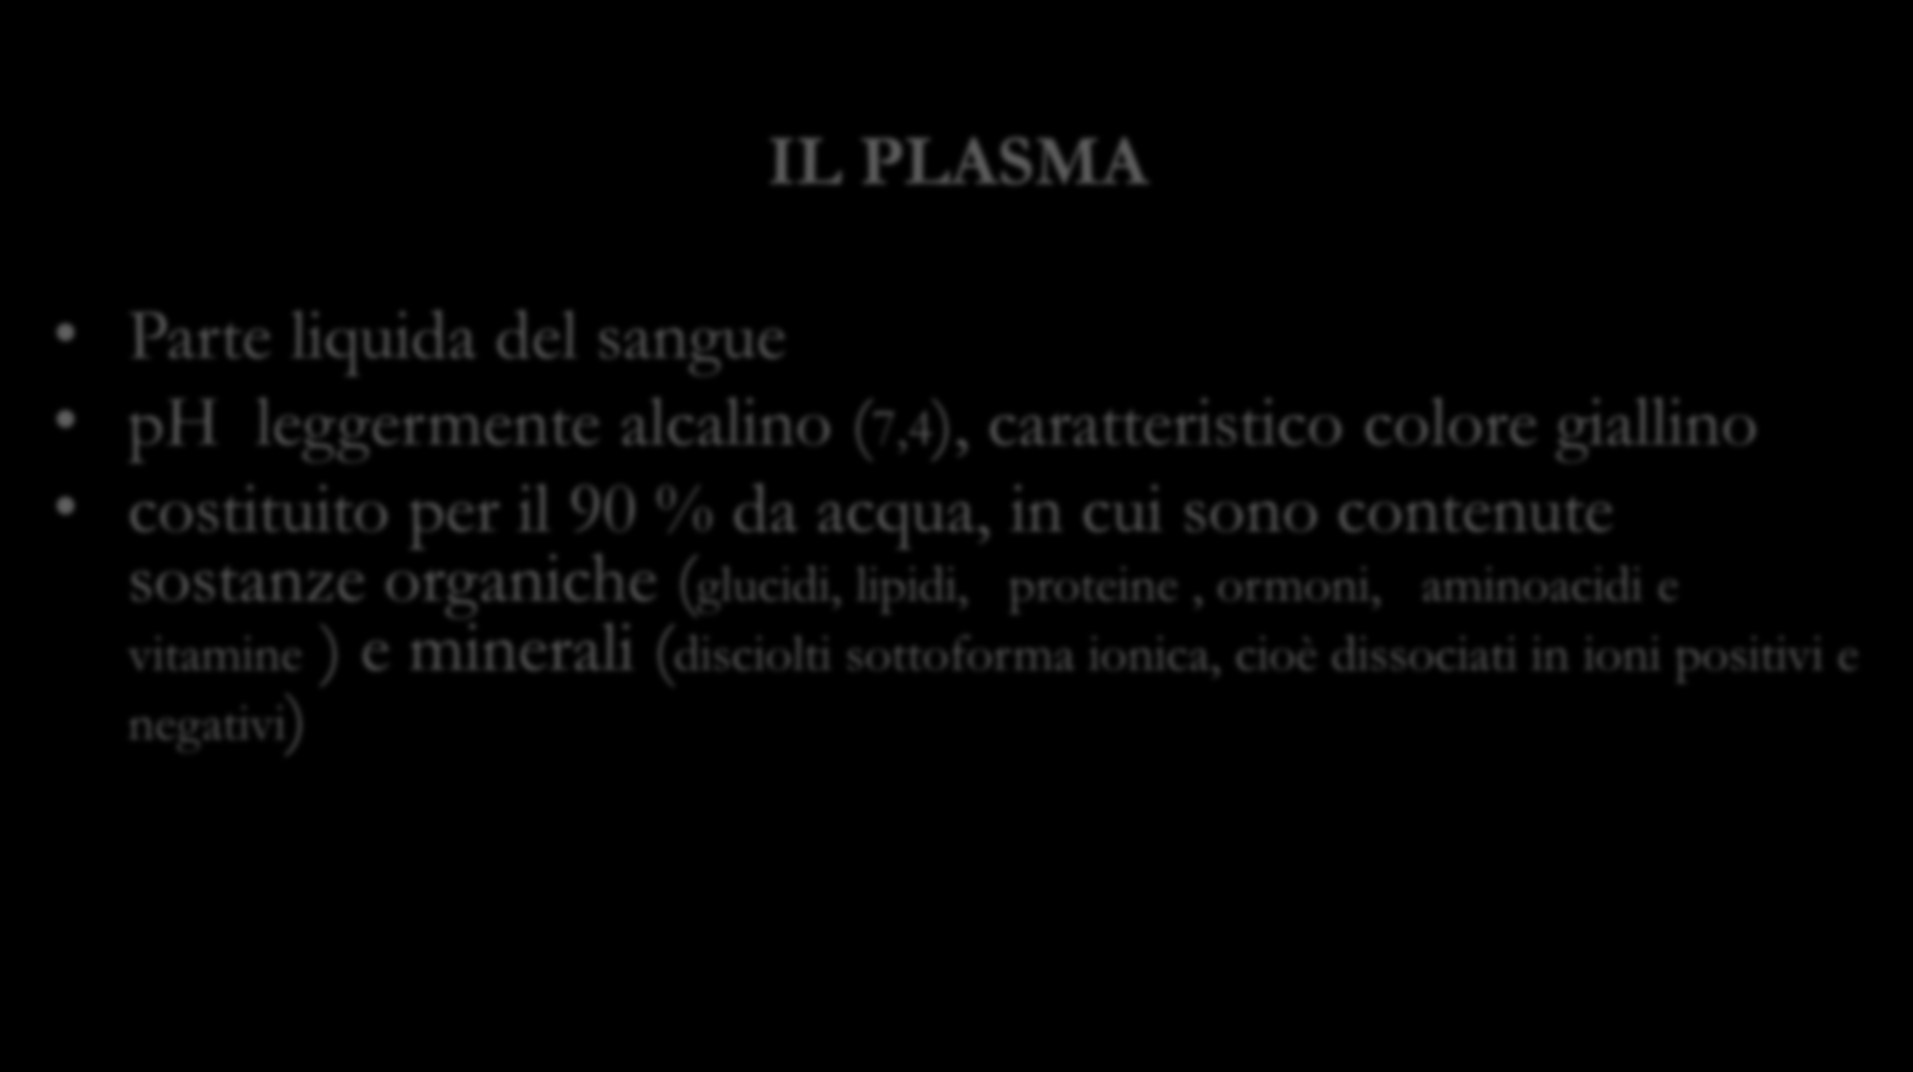 IL PLASMA Parte liquida del sangue ph leggermente alcalino (7,4), caratteristico colore giallino costituito per il 90 % da acqua, in cui sono contenute